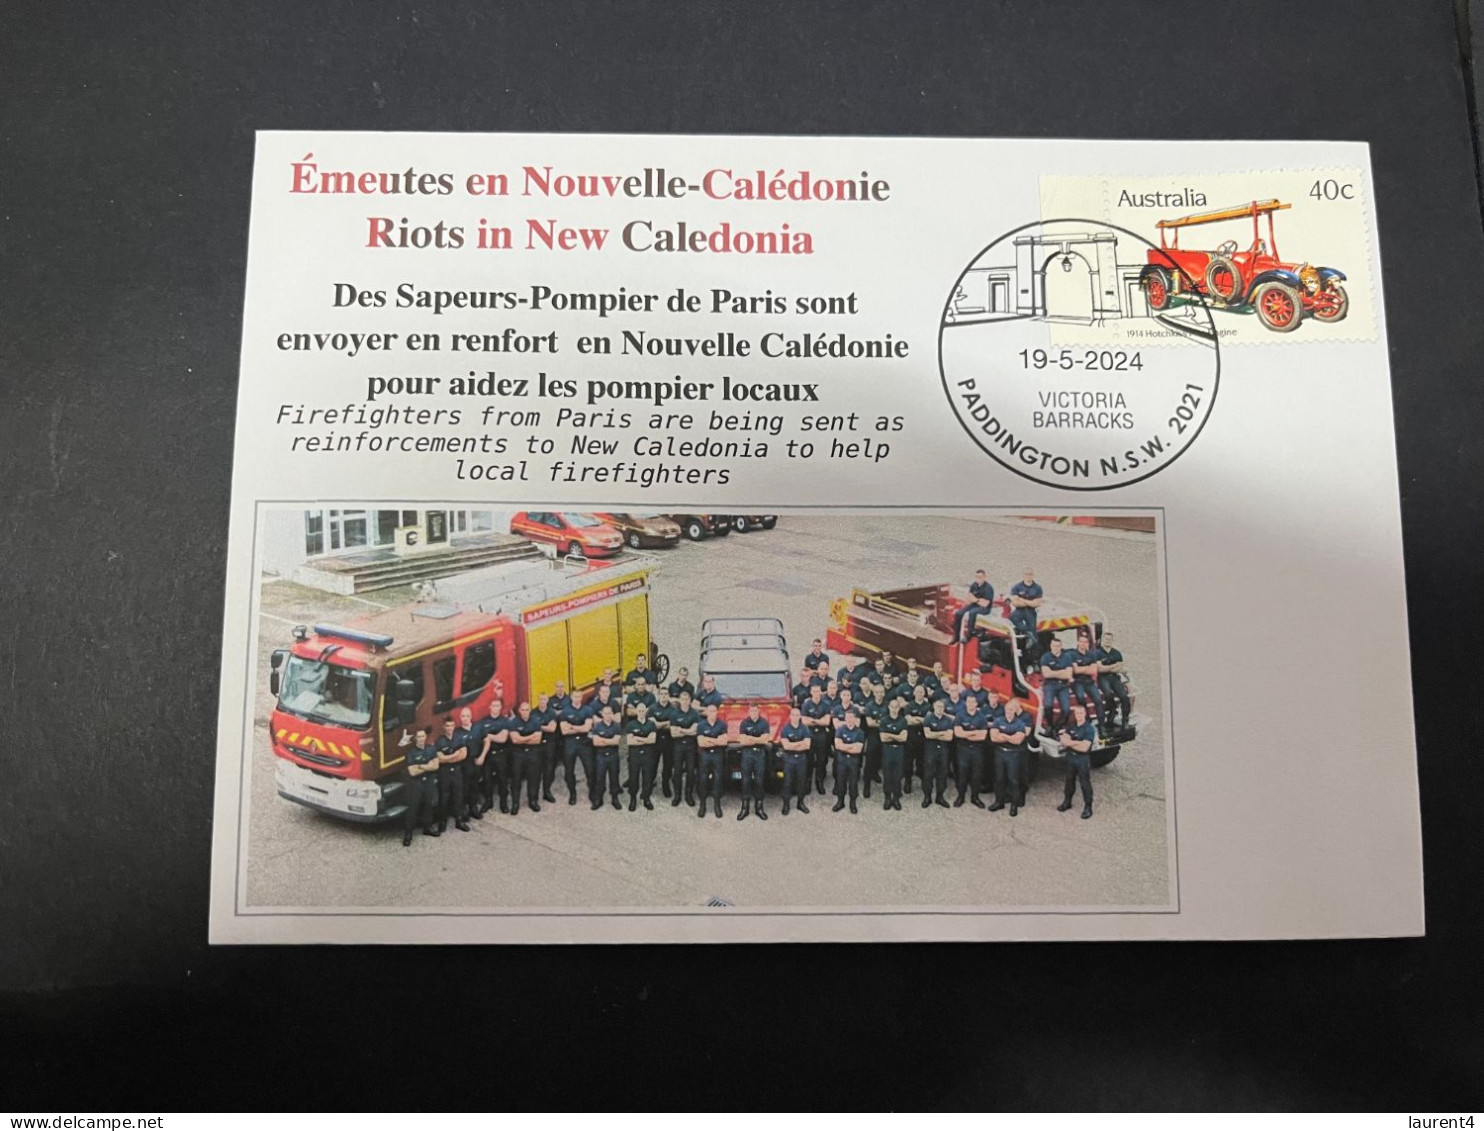 19-5-2024 (5 Z 27) (émeute) Riot In New Caledonia - Paris Firefighter Are Been To New Caledonia  (Pompier De Paris) - Brandweer